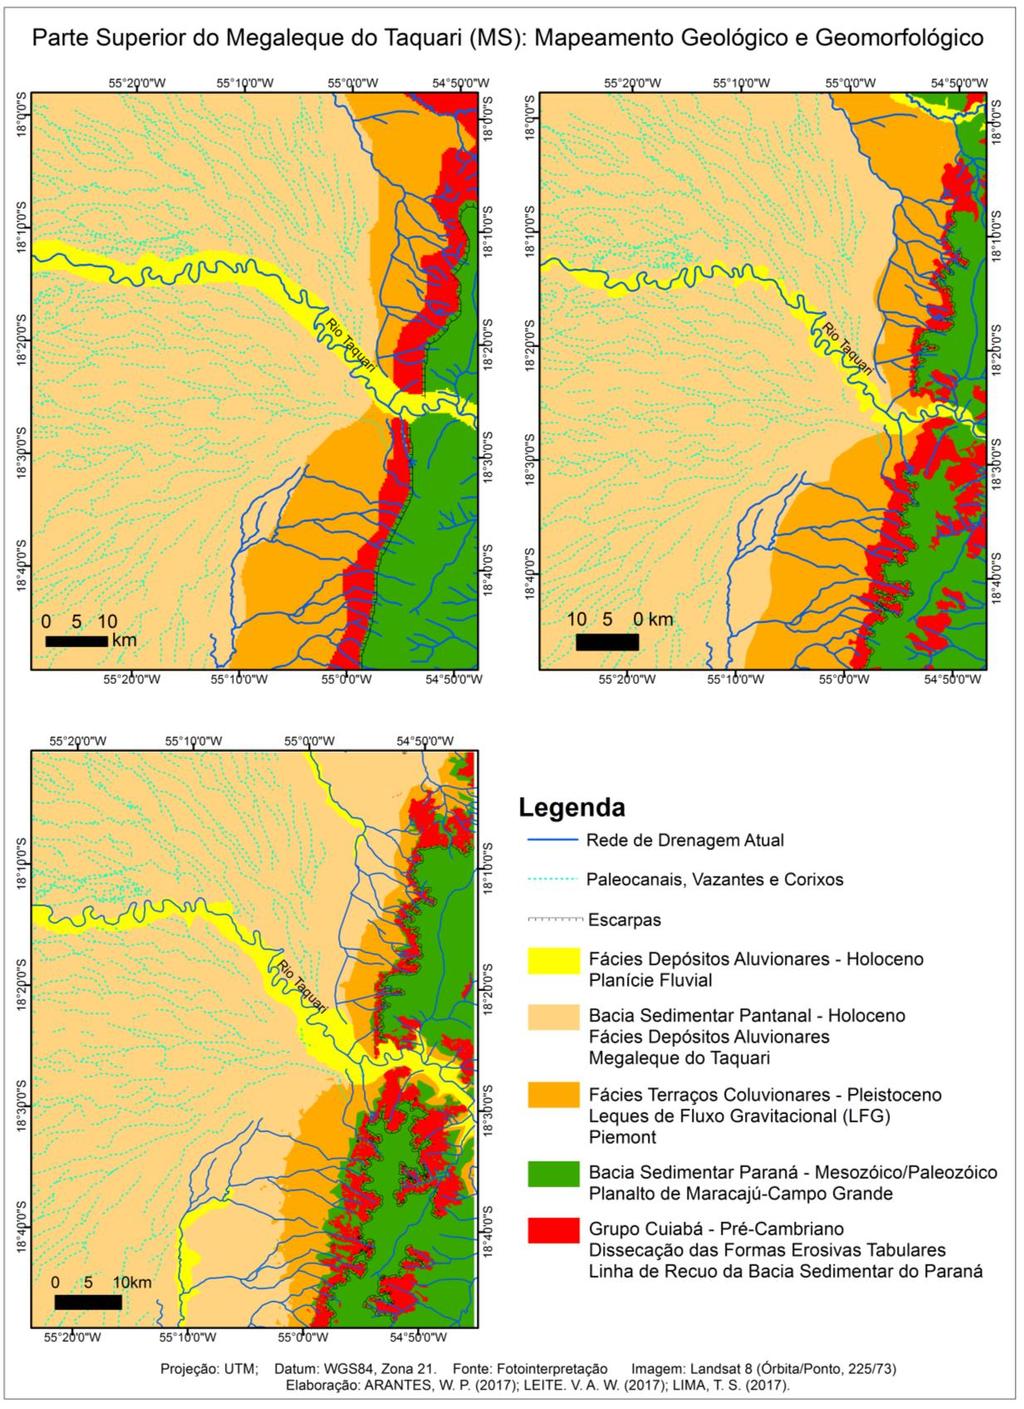 I II III Figura 4 Parte Superior do Megaleque do Taquari: Mapeamento Geológico- Geomorfológico (I) Interpretação Visual Manual; (II) Interpretação Visual Digital;